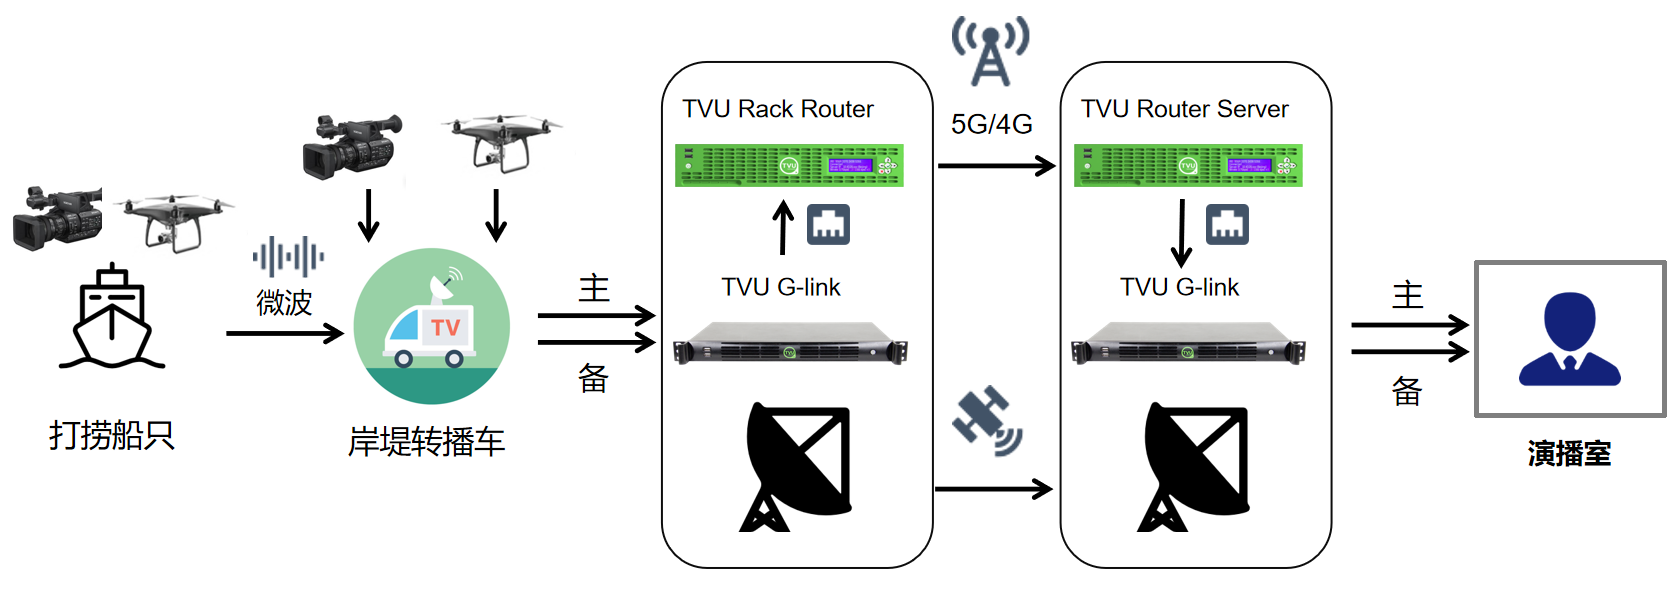 TVU Router connection process